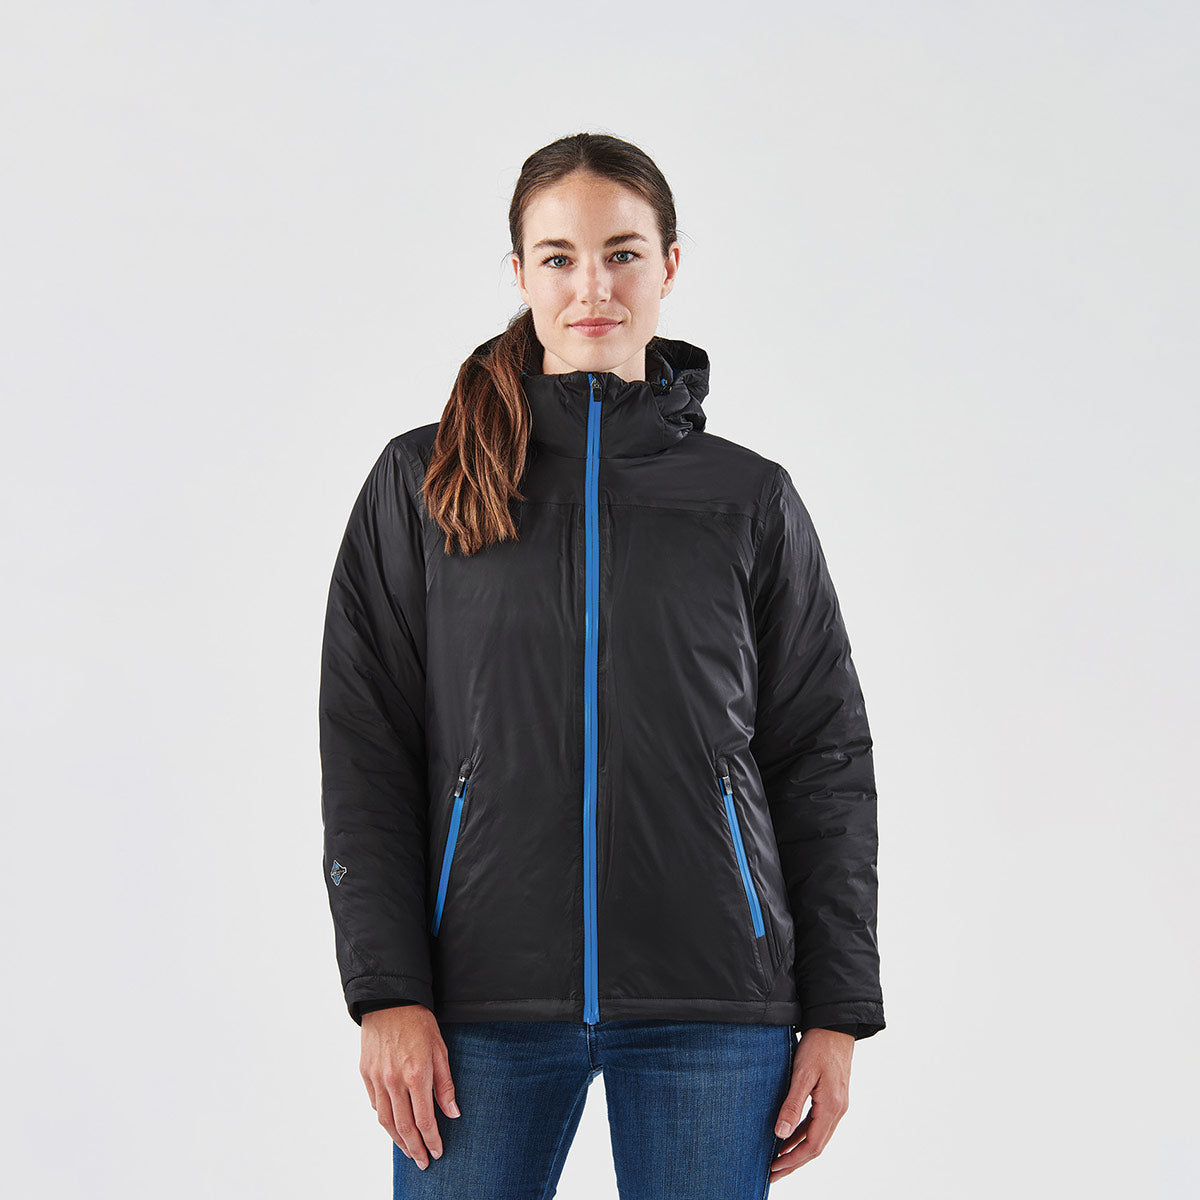 Women's Stavanger Thermal Vest - Stormtech USA Retail